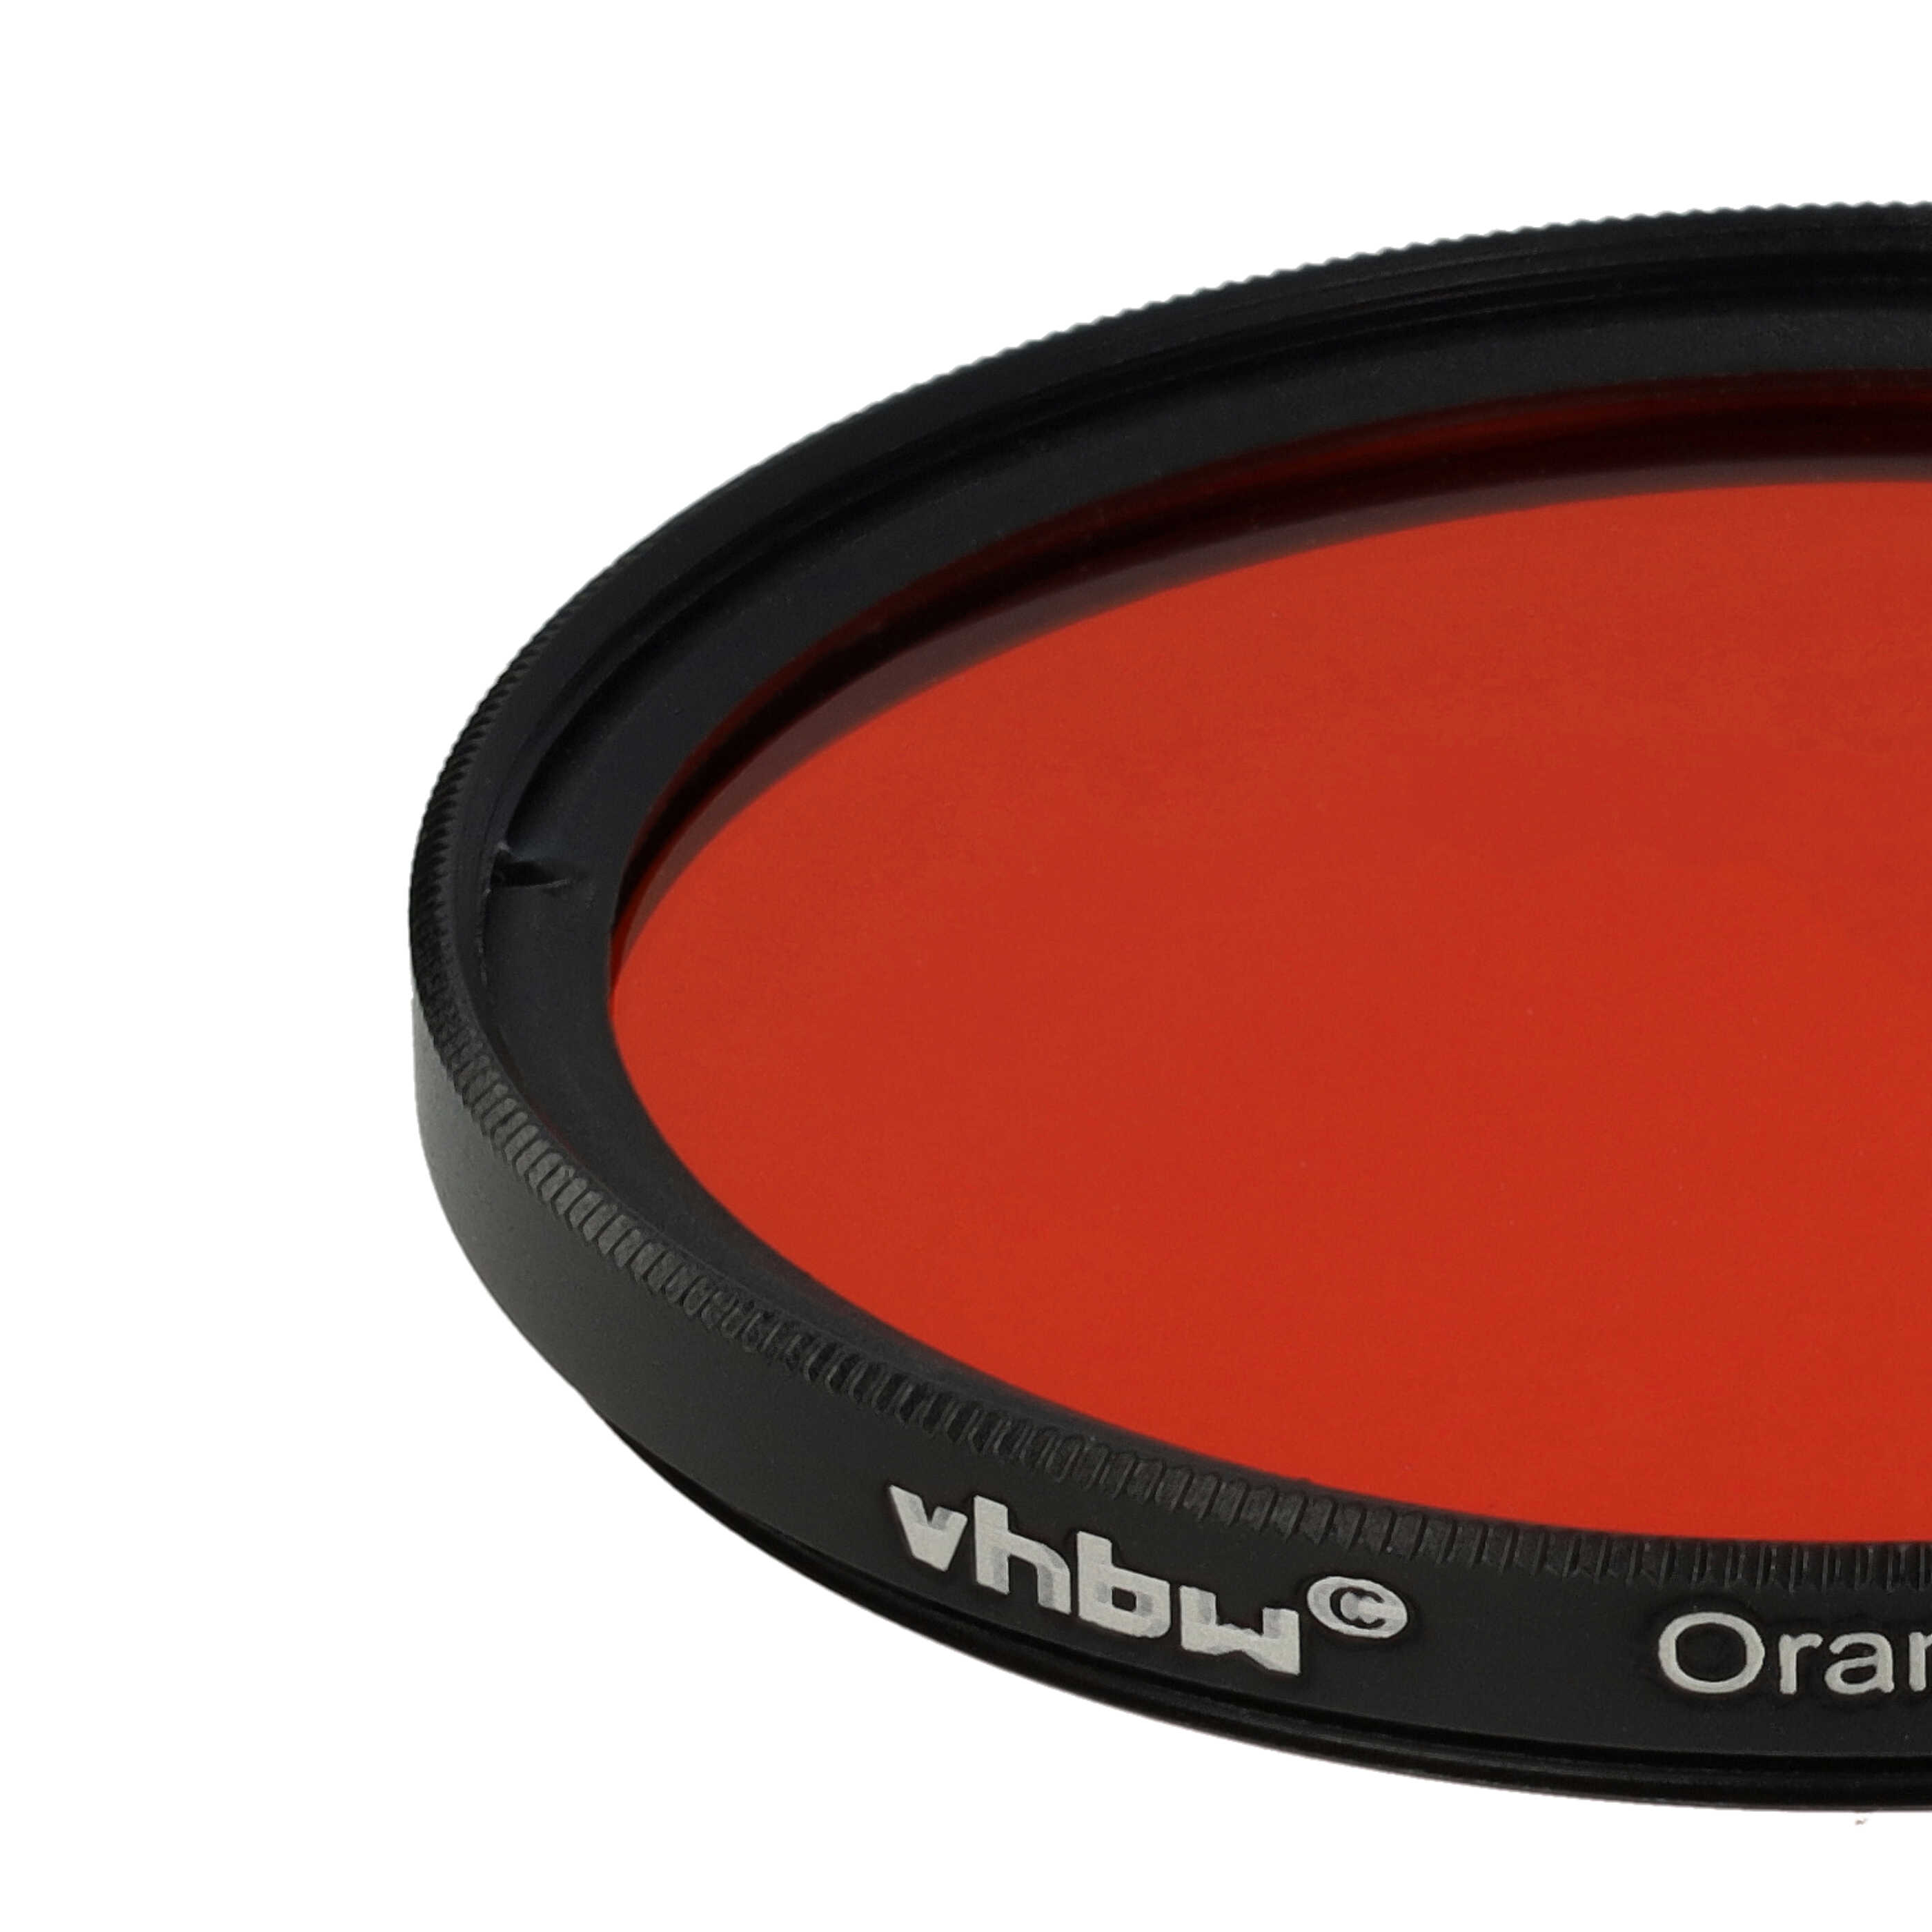 Filtr fotograficzny na obiektywy z gwintem 55 mm - filtr pomarańczowy